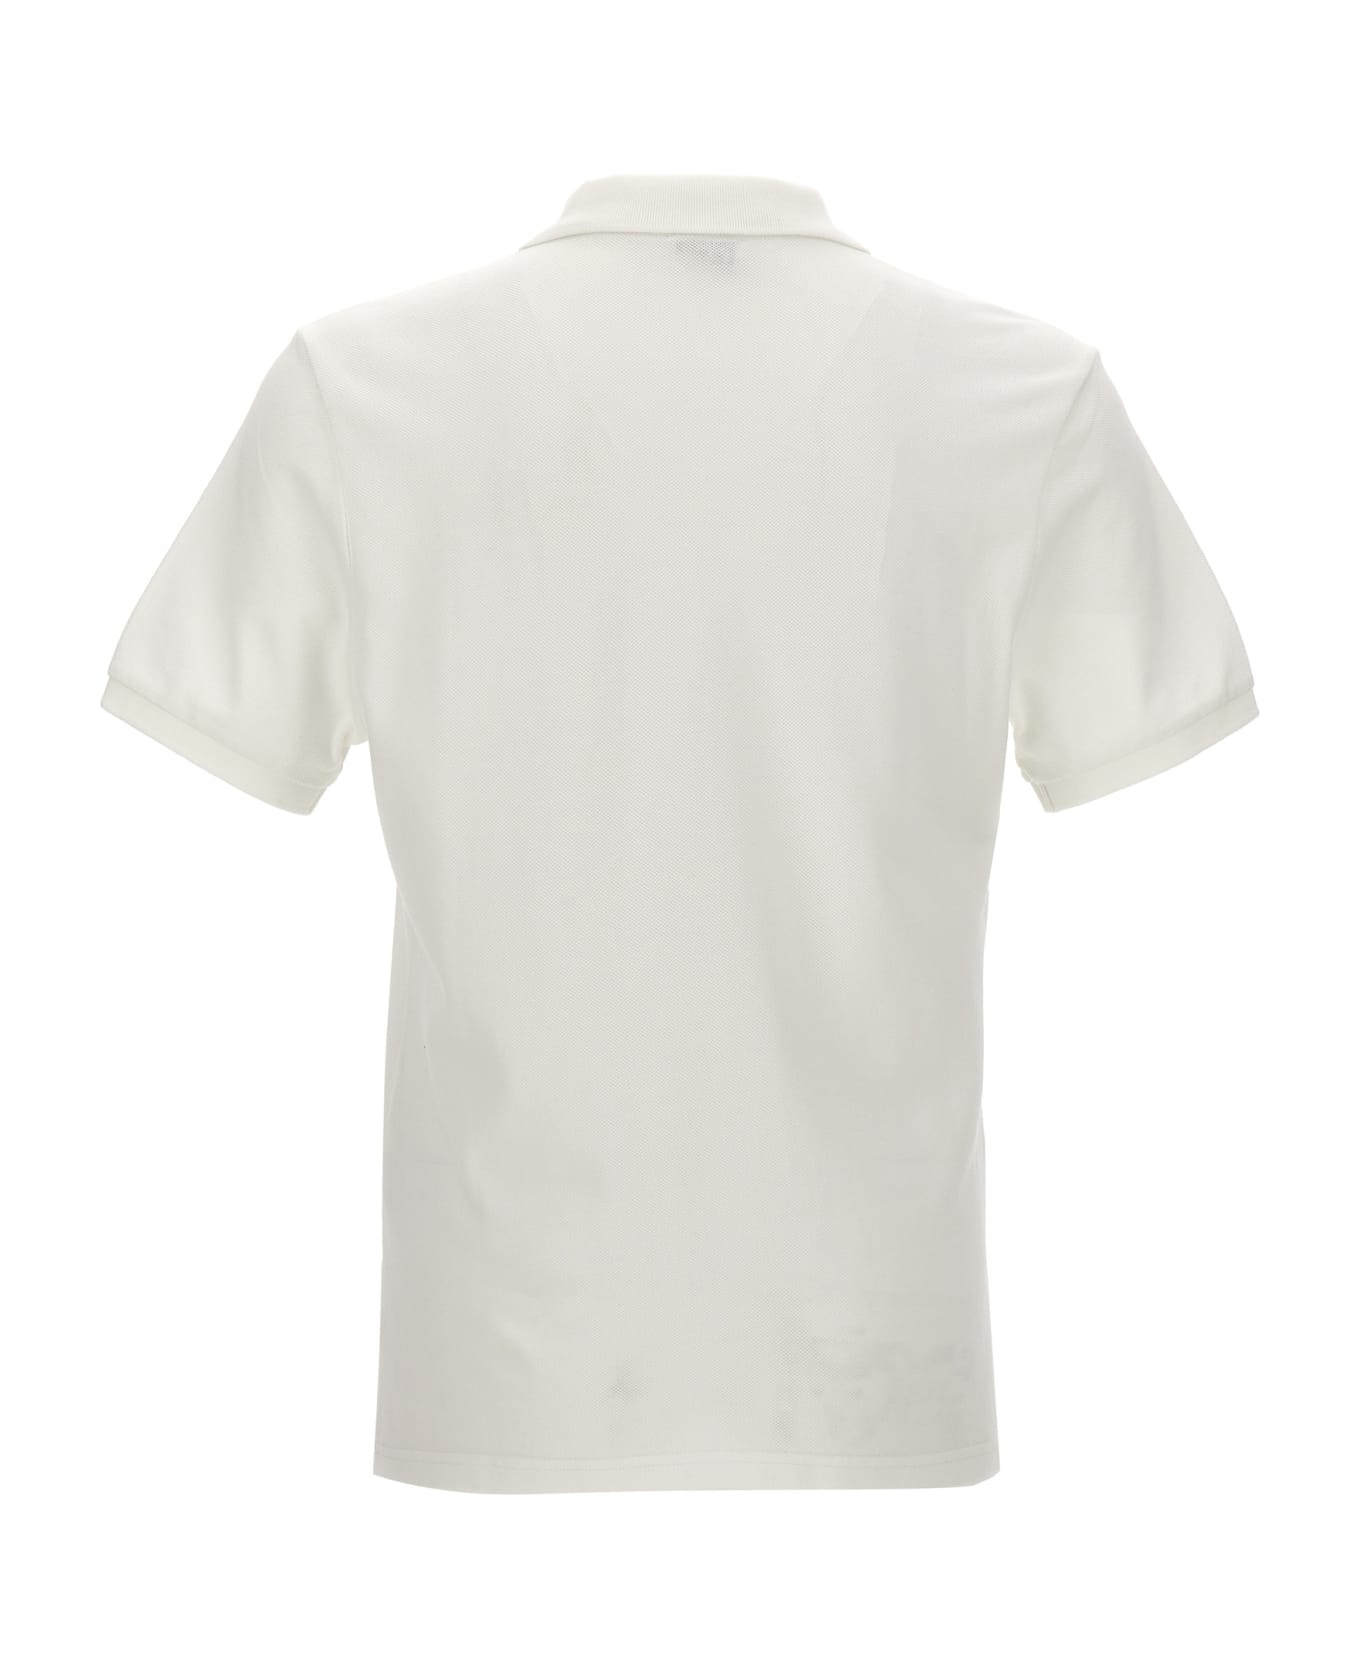 Kenzo Polo Shirt - White